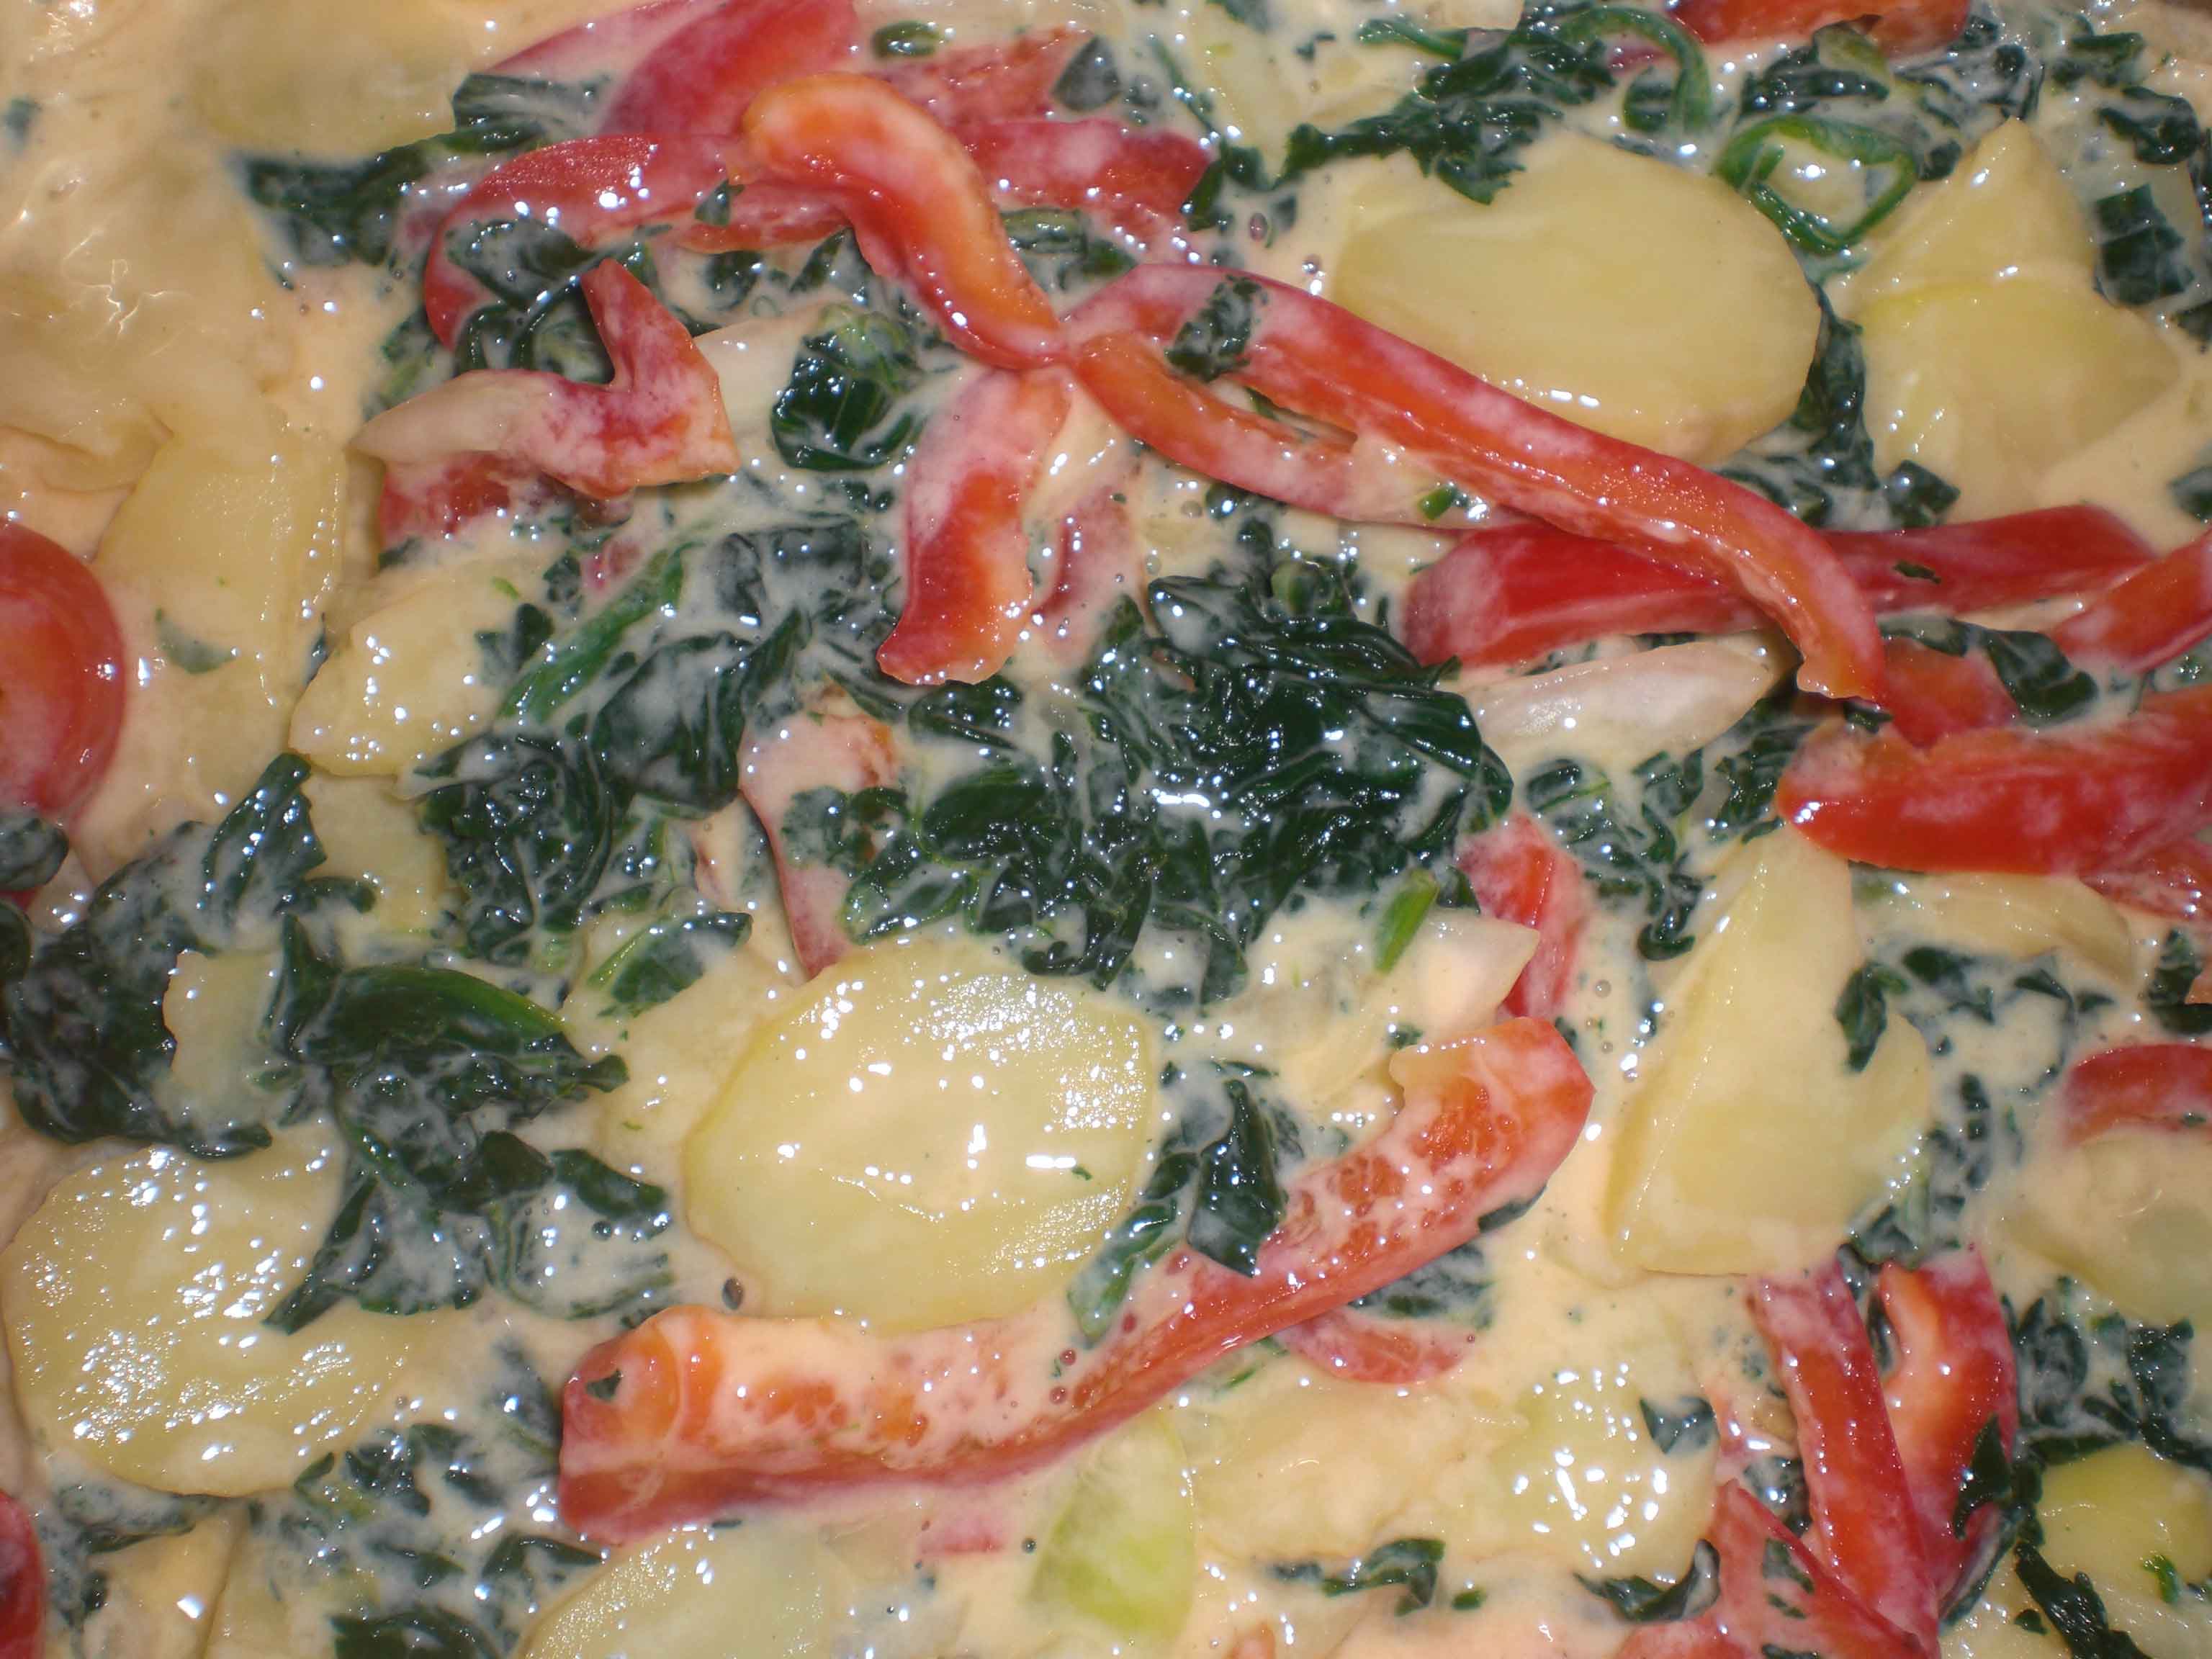 Hæld fromage frais-blandingen over grøntsagerne.